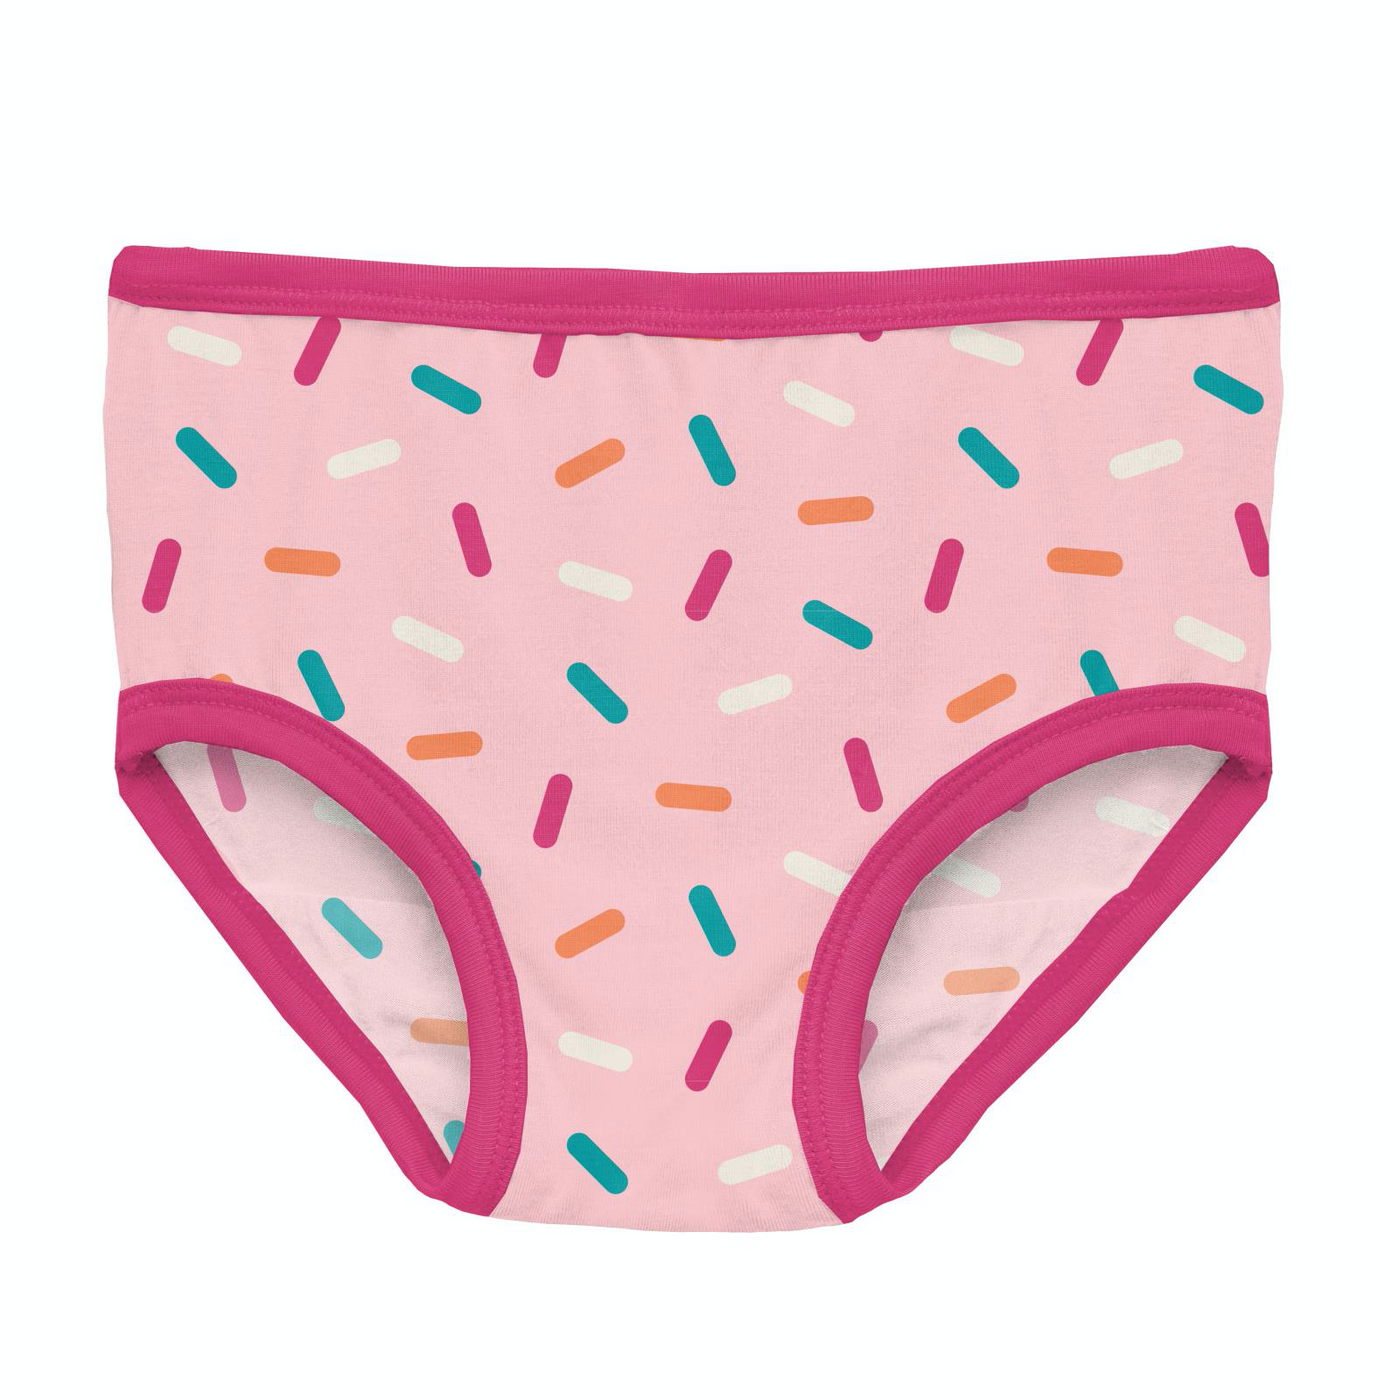 Kickee Pants Girl's Underwear: Lotus Sprinkles